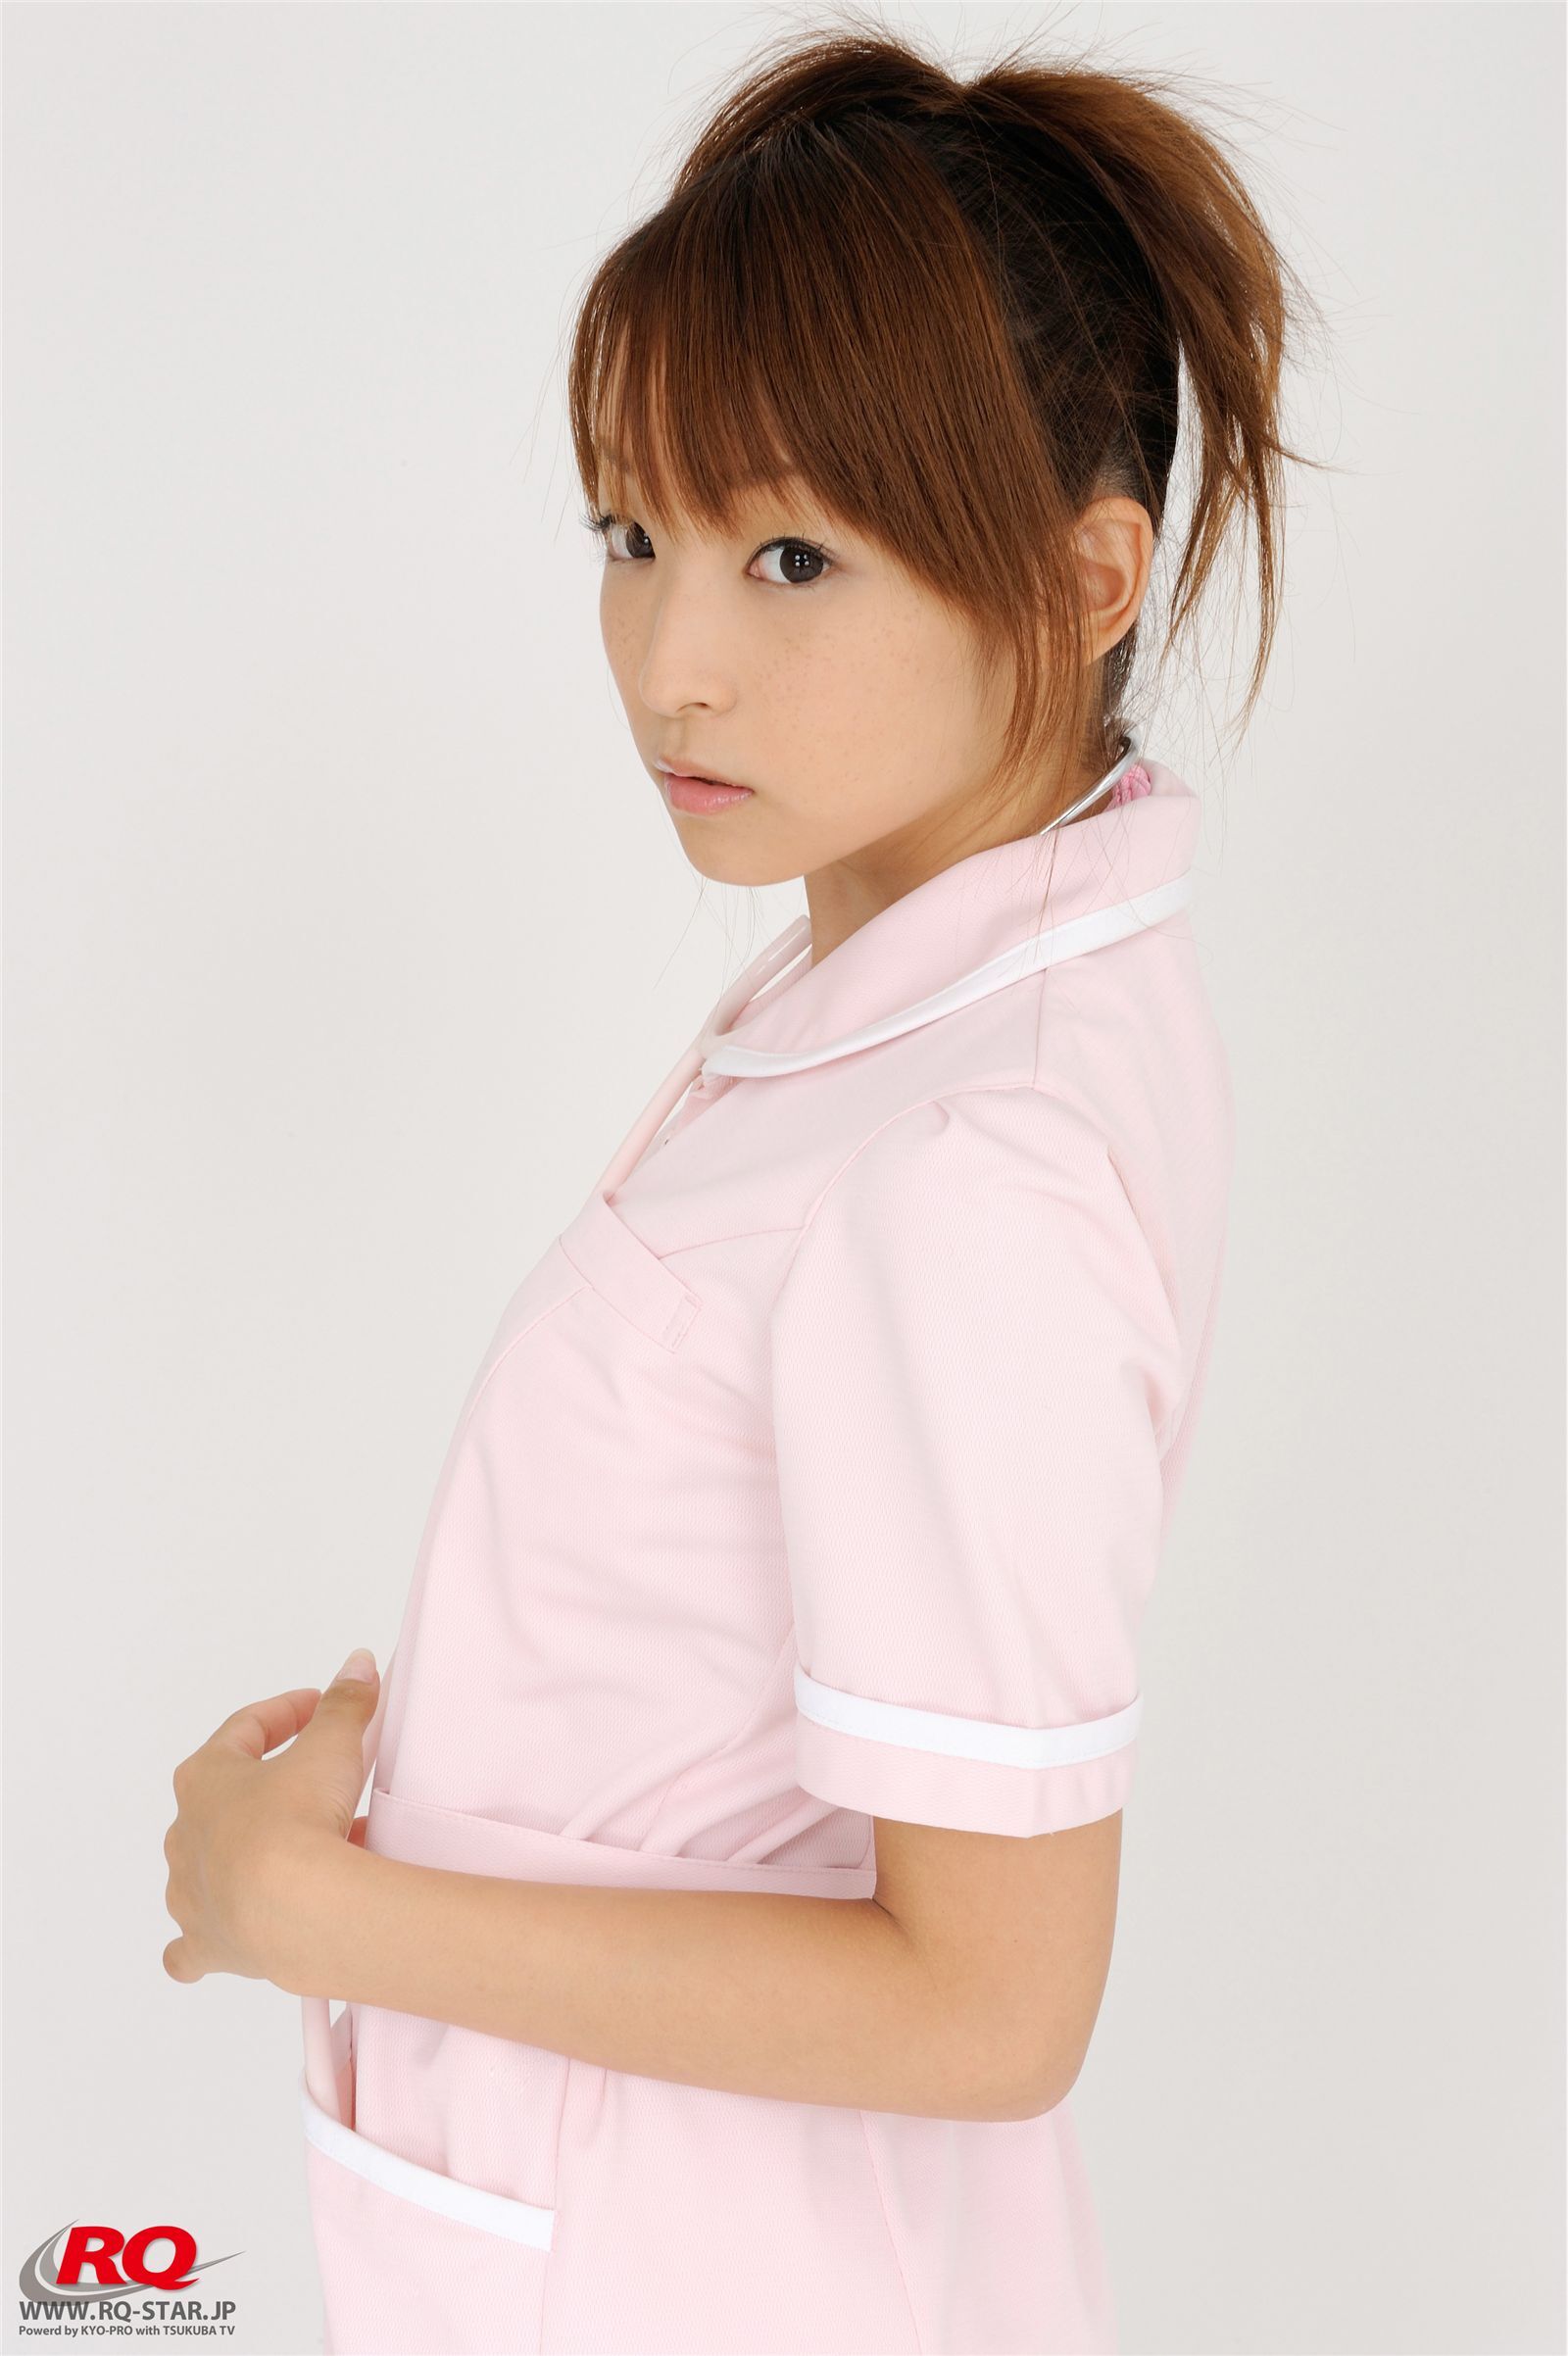 青木未央 Mio Aoki NO.00083 RQ-STAR 日本高清制服美女写真